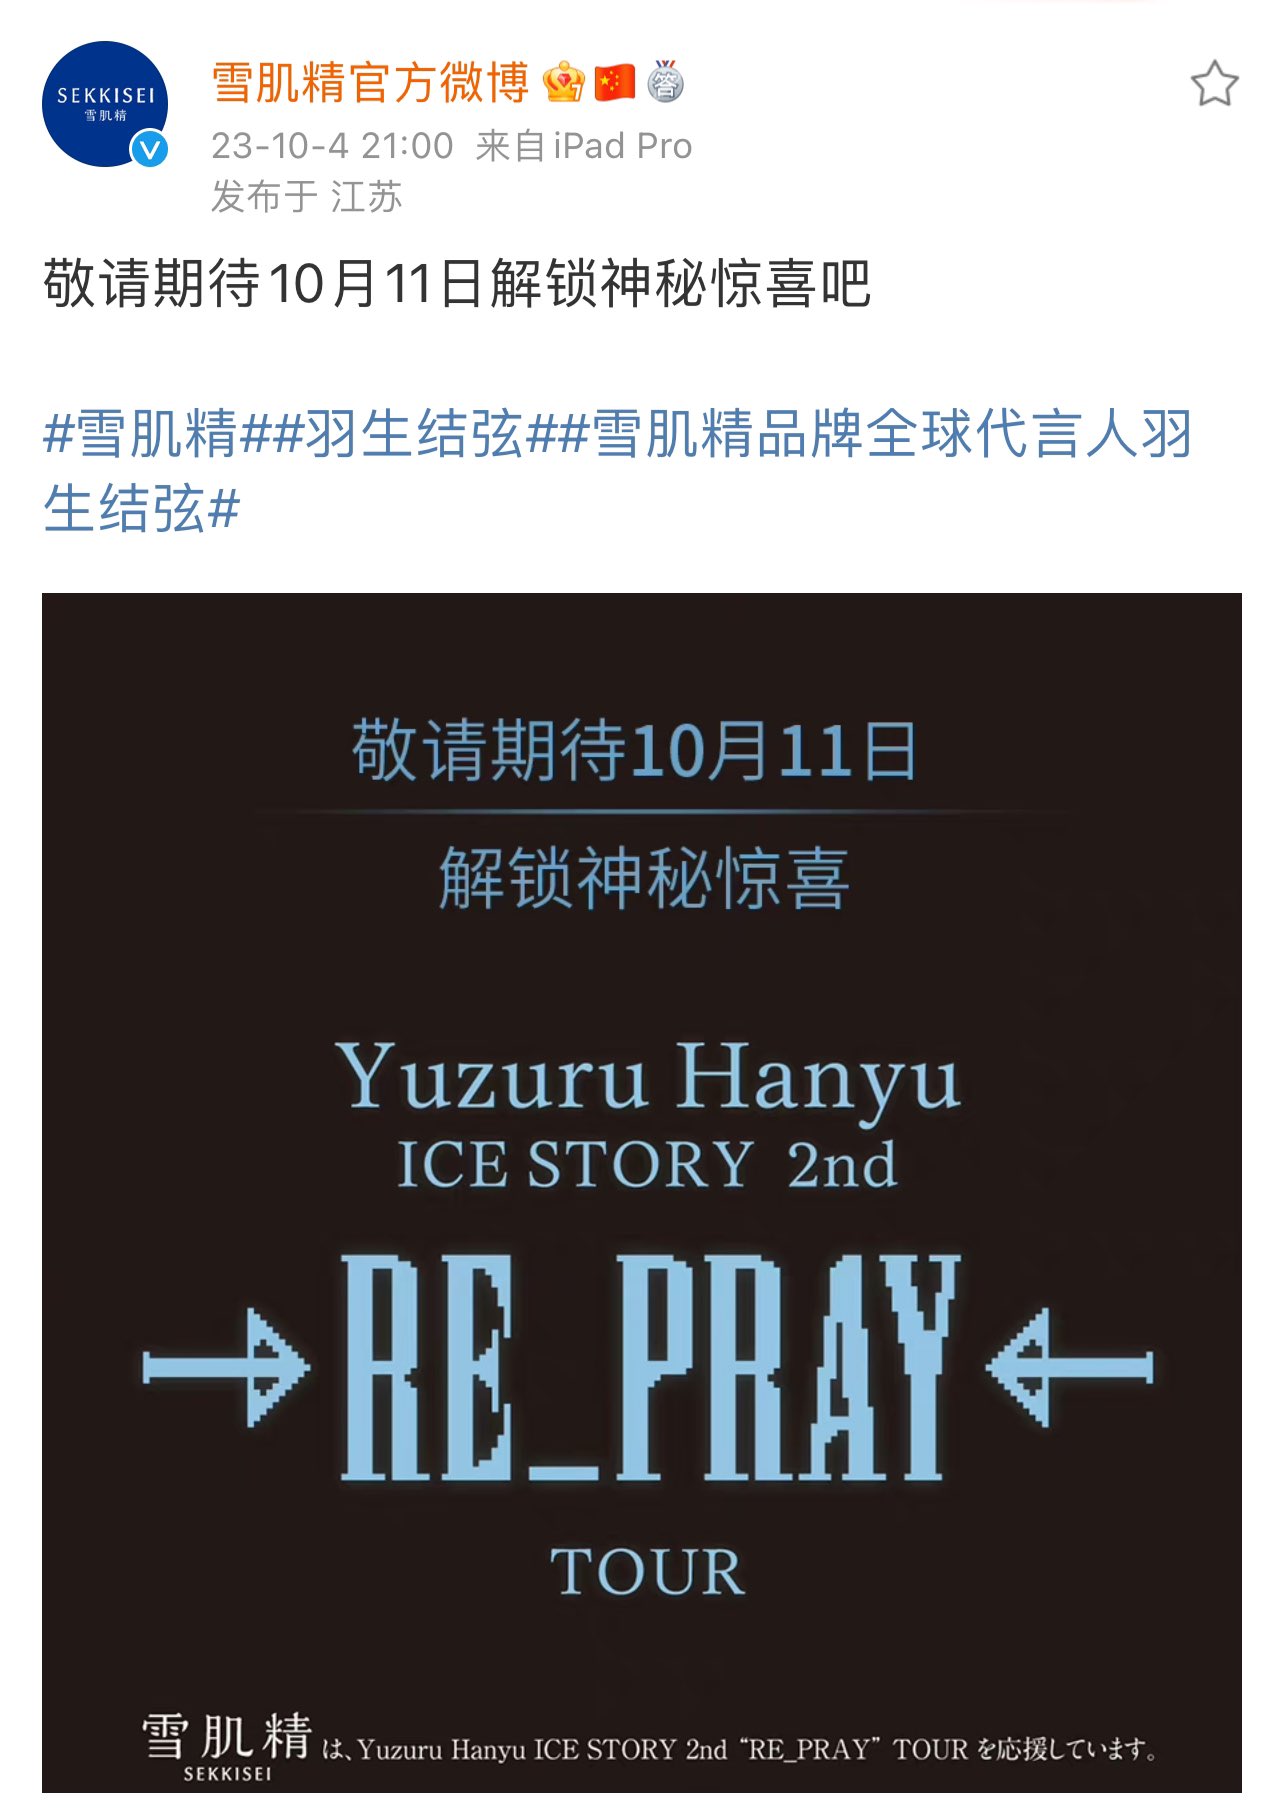 YuzuNews2023 da 1 a 5 ottobre